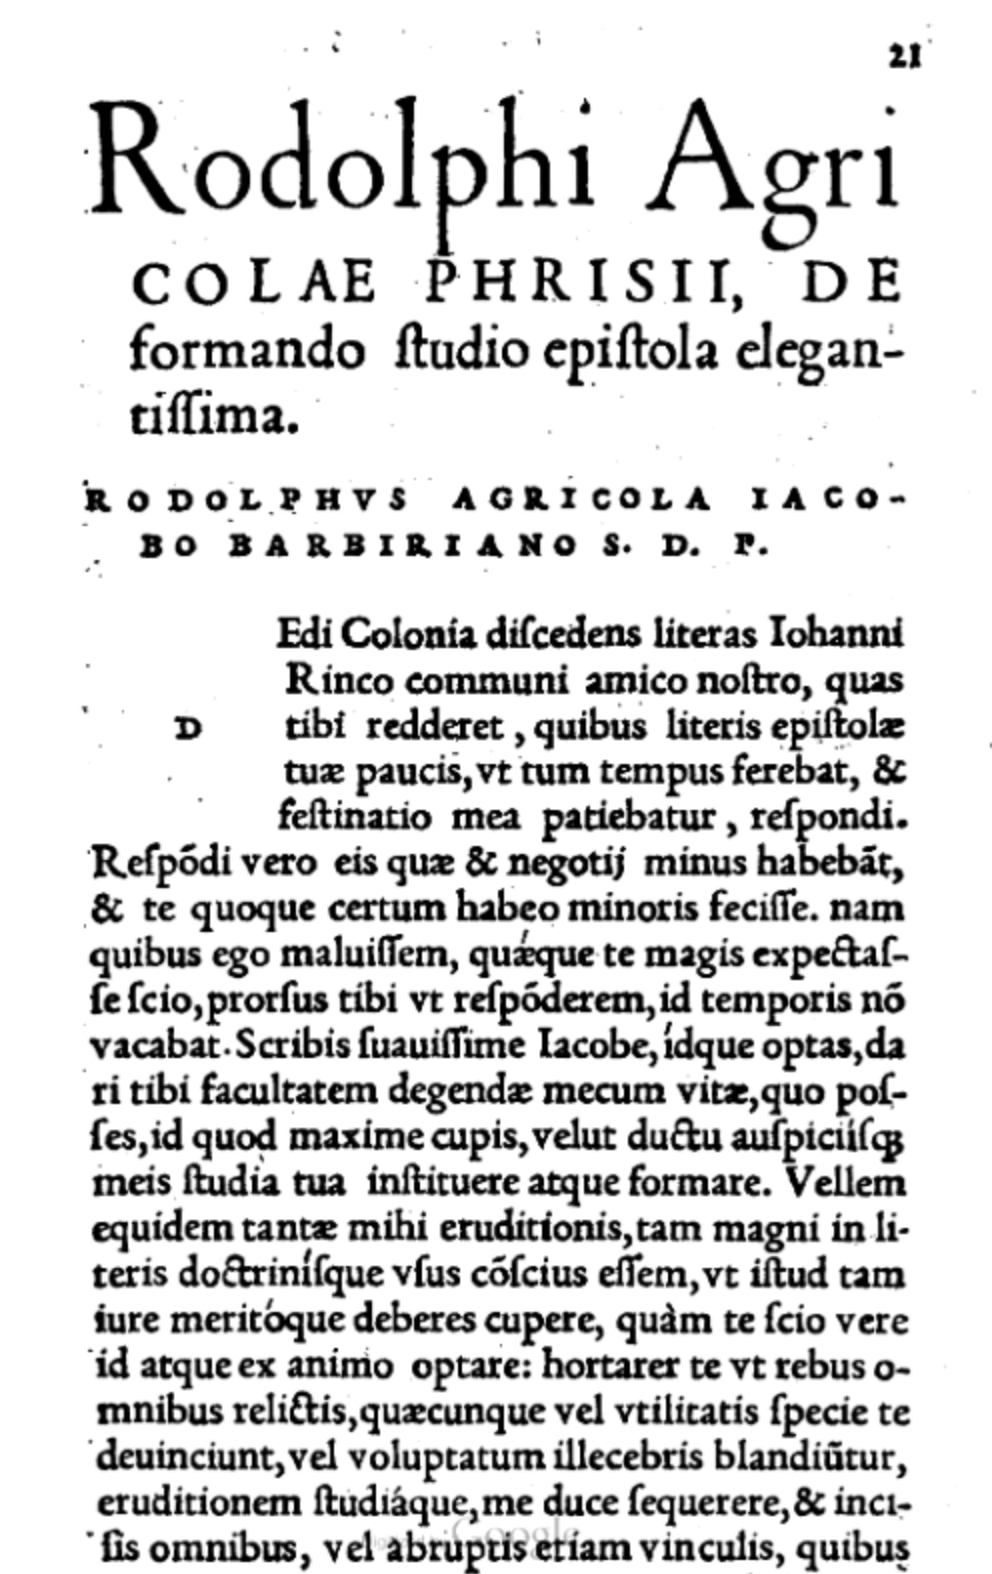 Agricola's text in: Melanchthonis de corrigendis studiis sermo; Rodolphi Agricolae de formandis studiis epistola doctissima; De miseriis pædagogorum oratio, Paris 1534